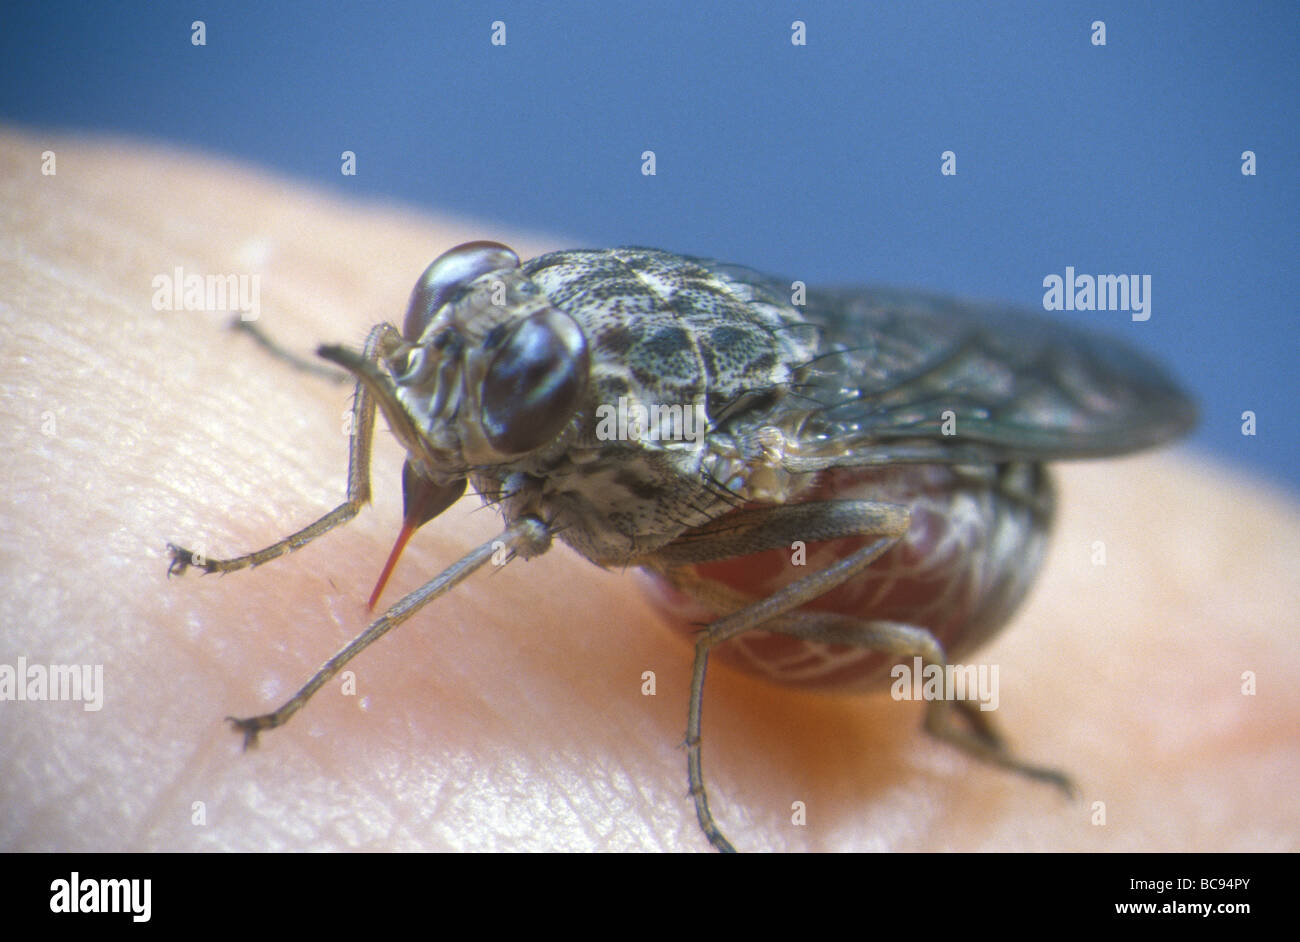 La mouche tsé-tsé, Glossina - nourrir de sang humain. Tsetses sont responsables de la transmission de plusieurs maladies humaines tropicales. Banque D'Images